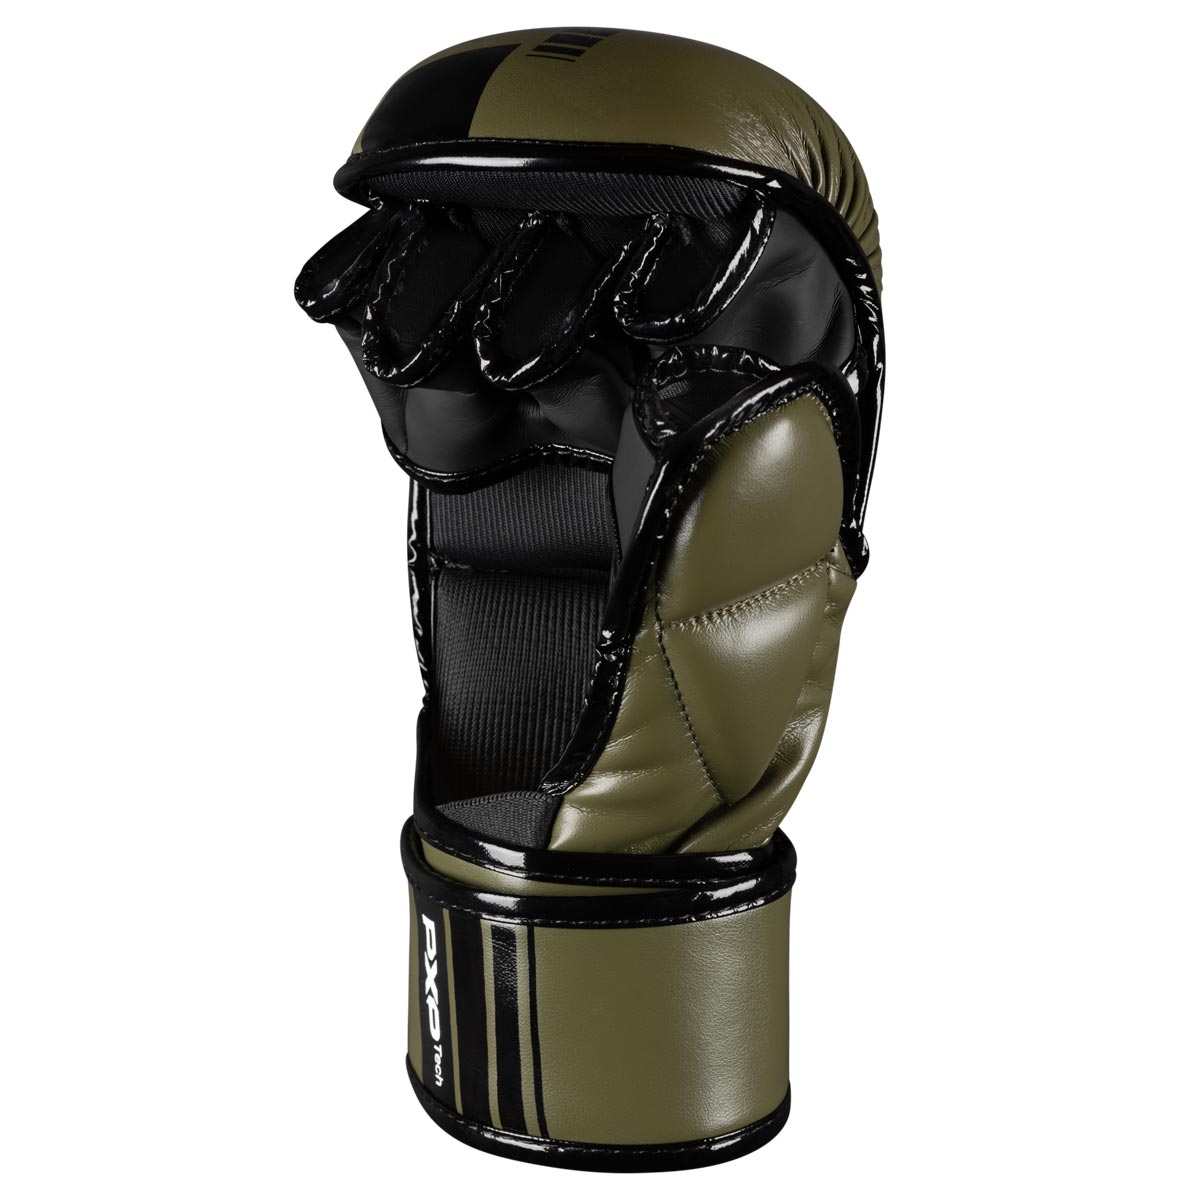 Die Phantom Apex MMA Sparringshandschuhe in Army grün - rechter Handschuh mit Daumenschutz in der Innenansicht